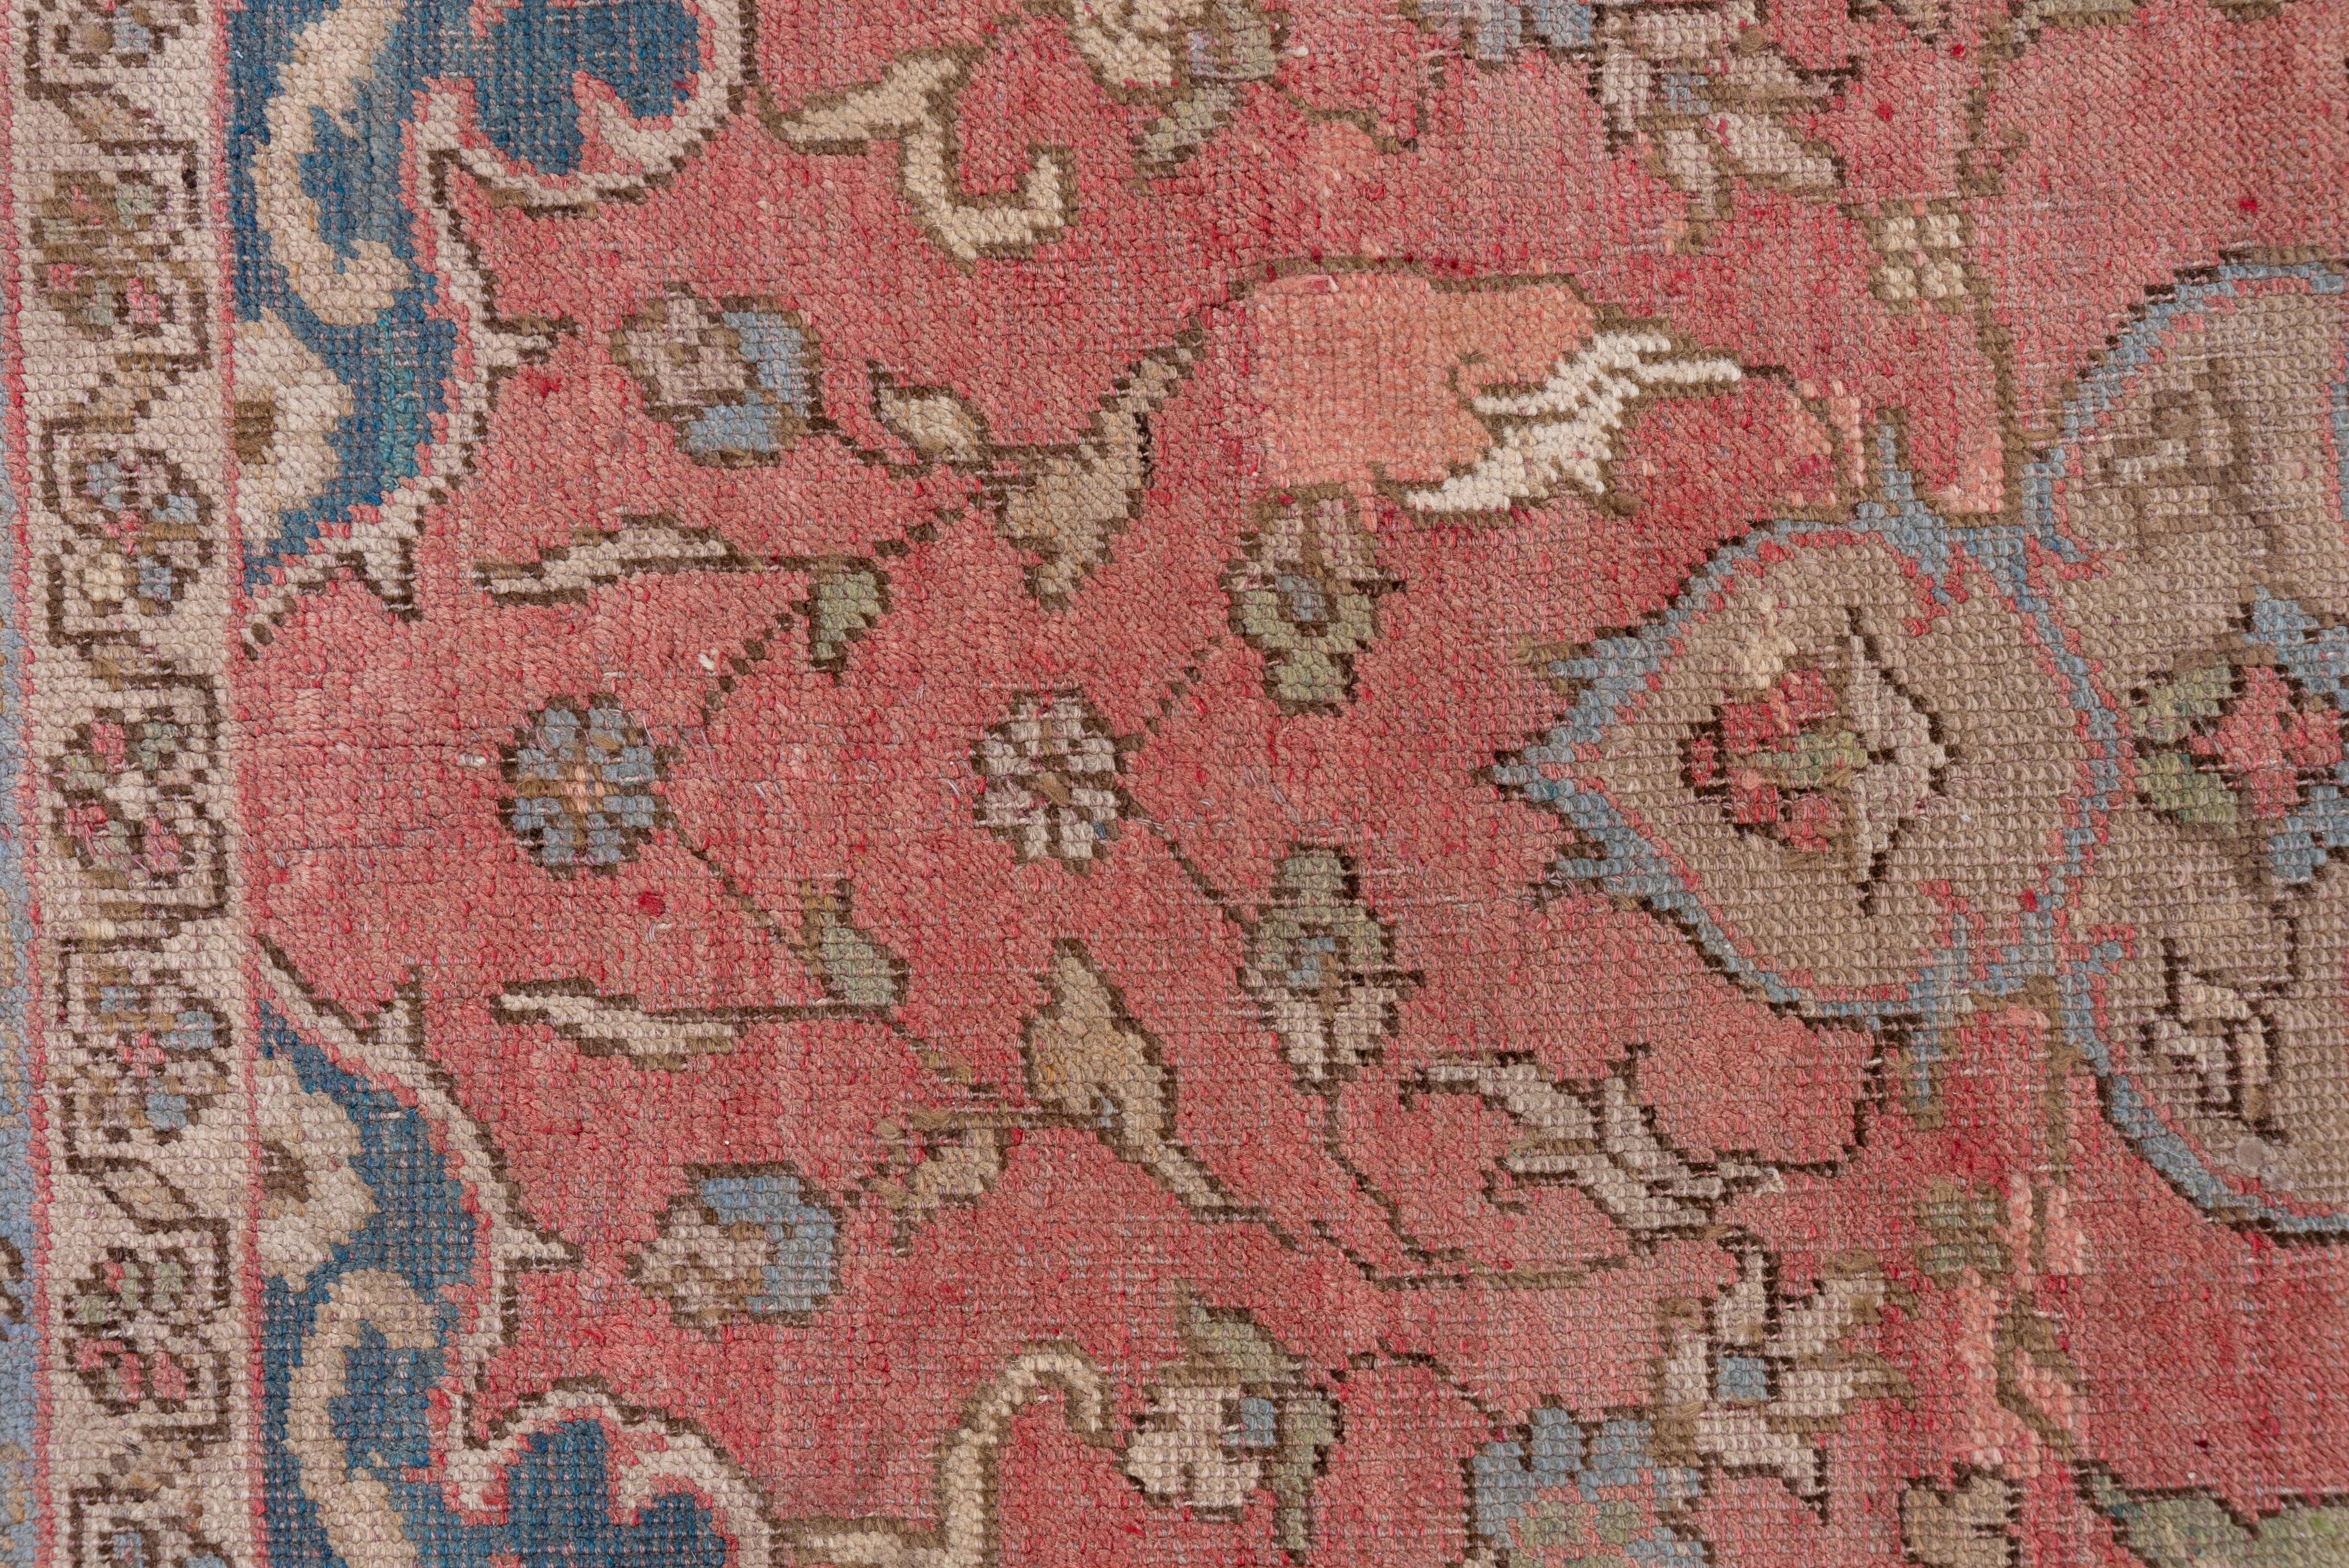 Dieses mäßig dicht gewebte Stück aus einer westtürkischen Werkstatt zeigt ein zartes, rosafarbenes Feld, in dessen Zentrum ein hängendes Stroh-Oktogramm-Medaillon mit einem hellblauen Oktofolien-Submedaillon steht, das sich dem Stil der persischen